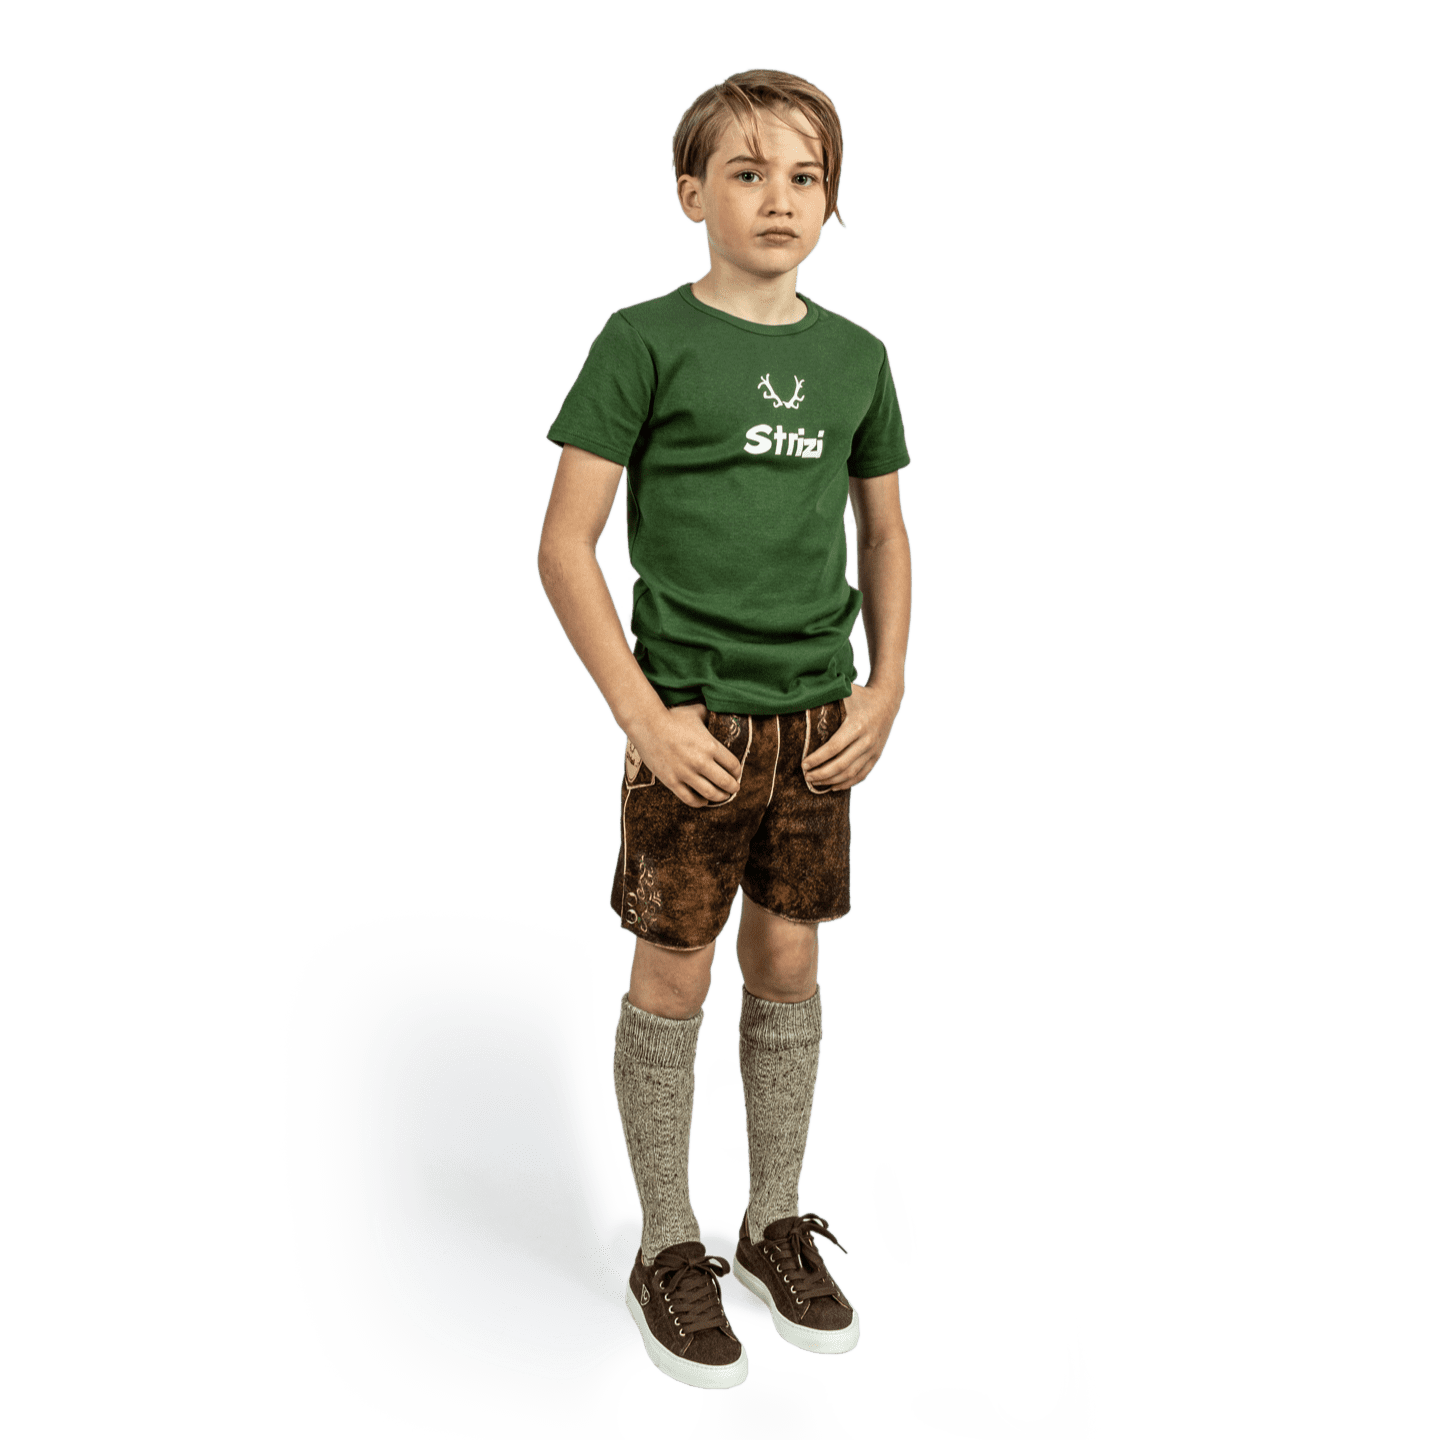 Strizi Kinder Striz Shirt 1 - Strizi Children‘s Strizi T-Shirt green